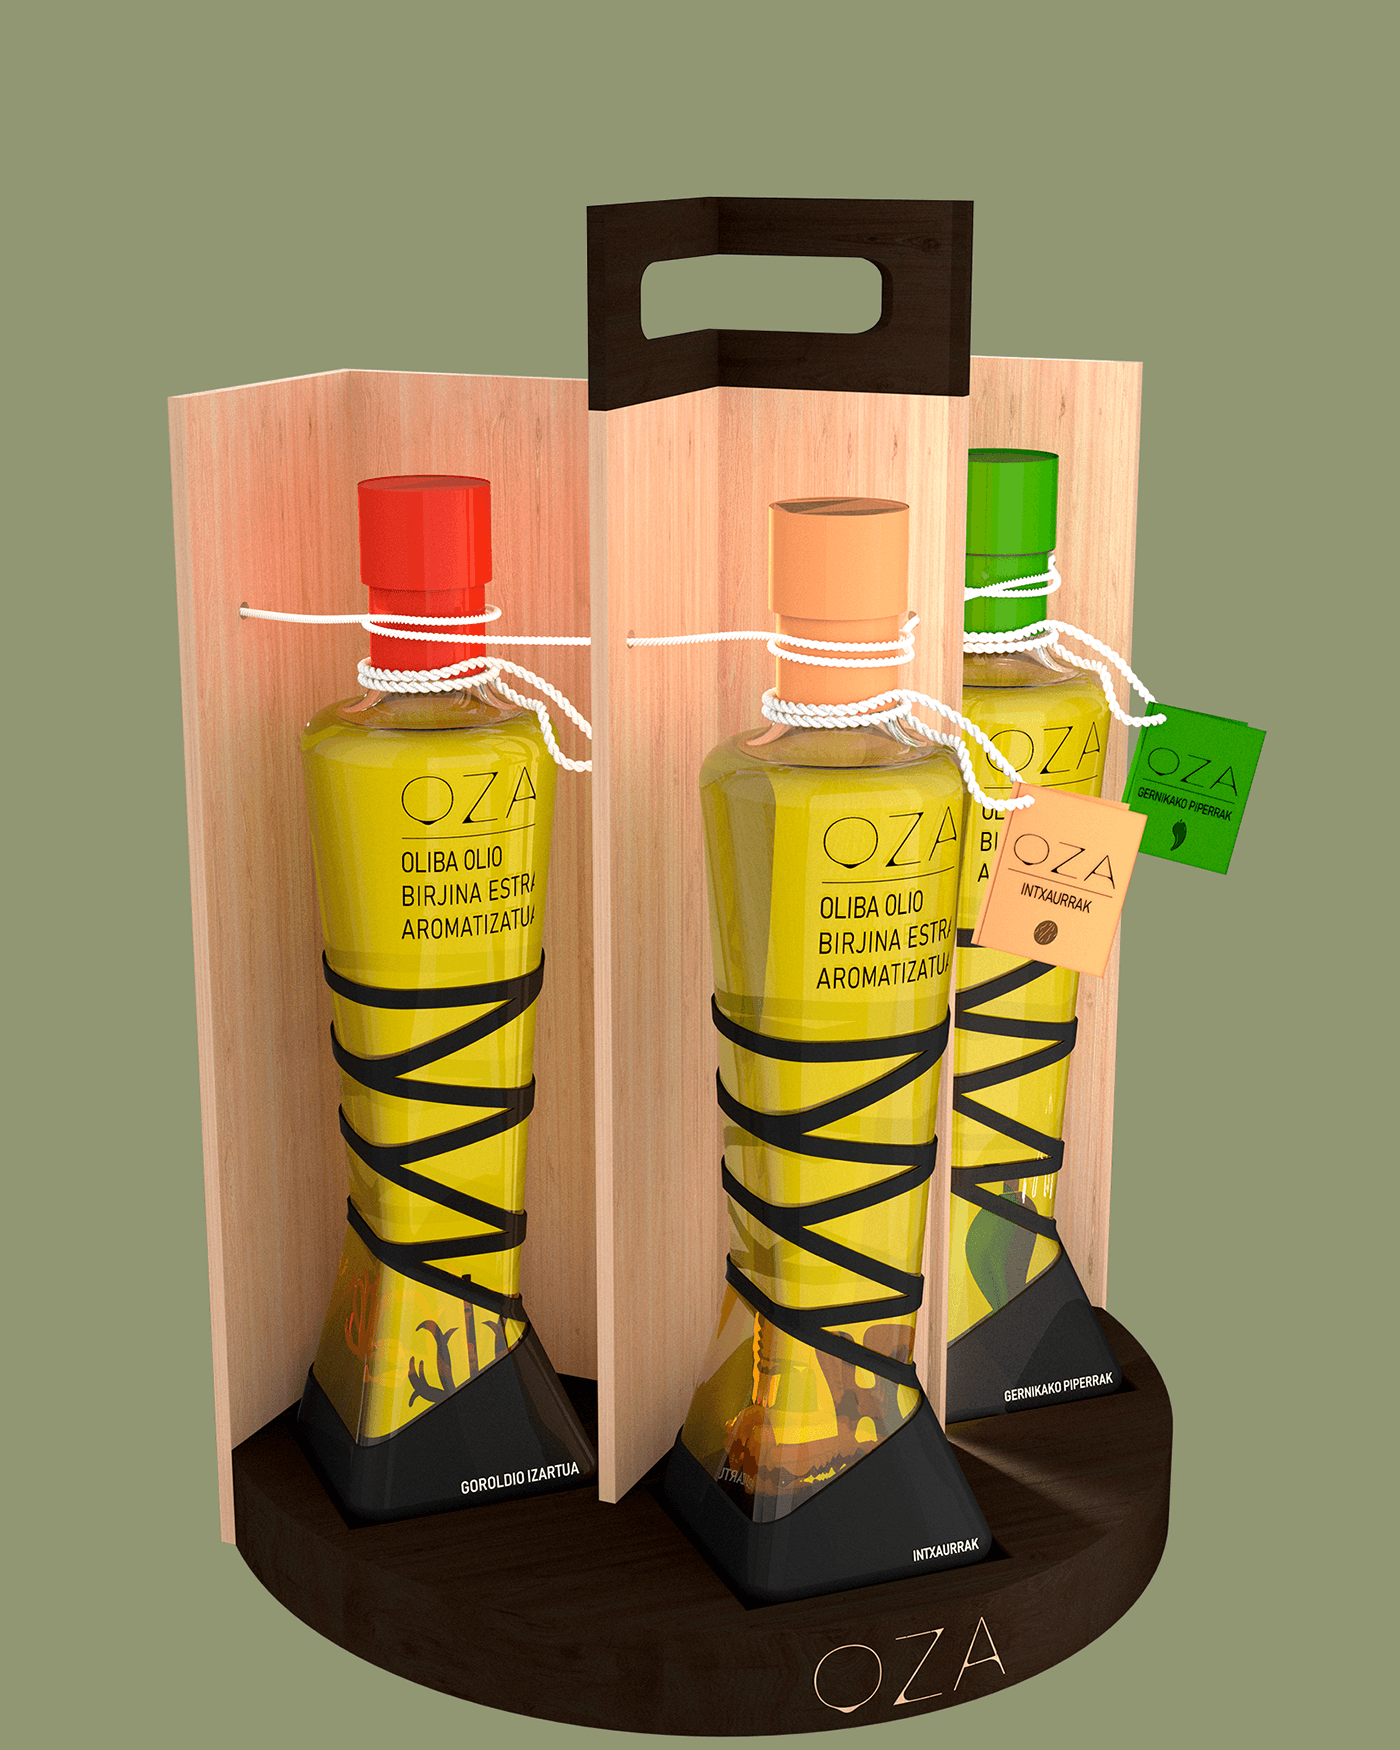 Olive Oil aceite de oliva bottle bottle design Packaging Logo Design basque country VASCO packaging design basque